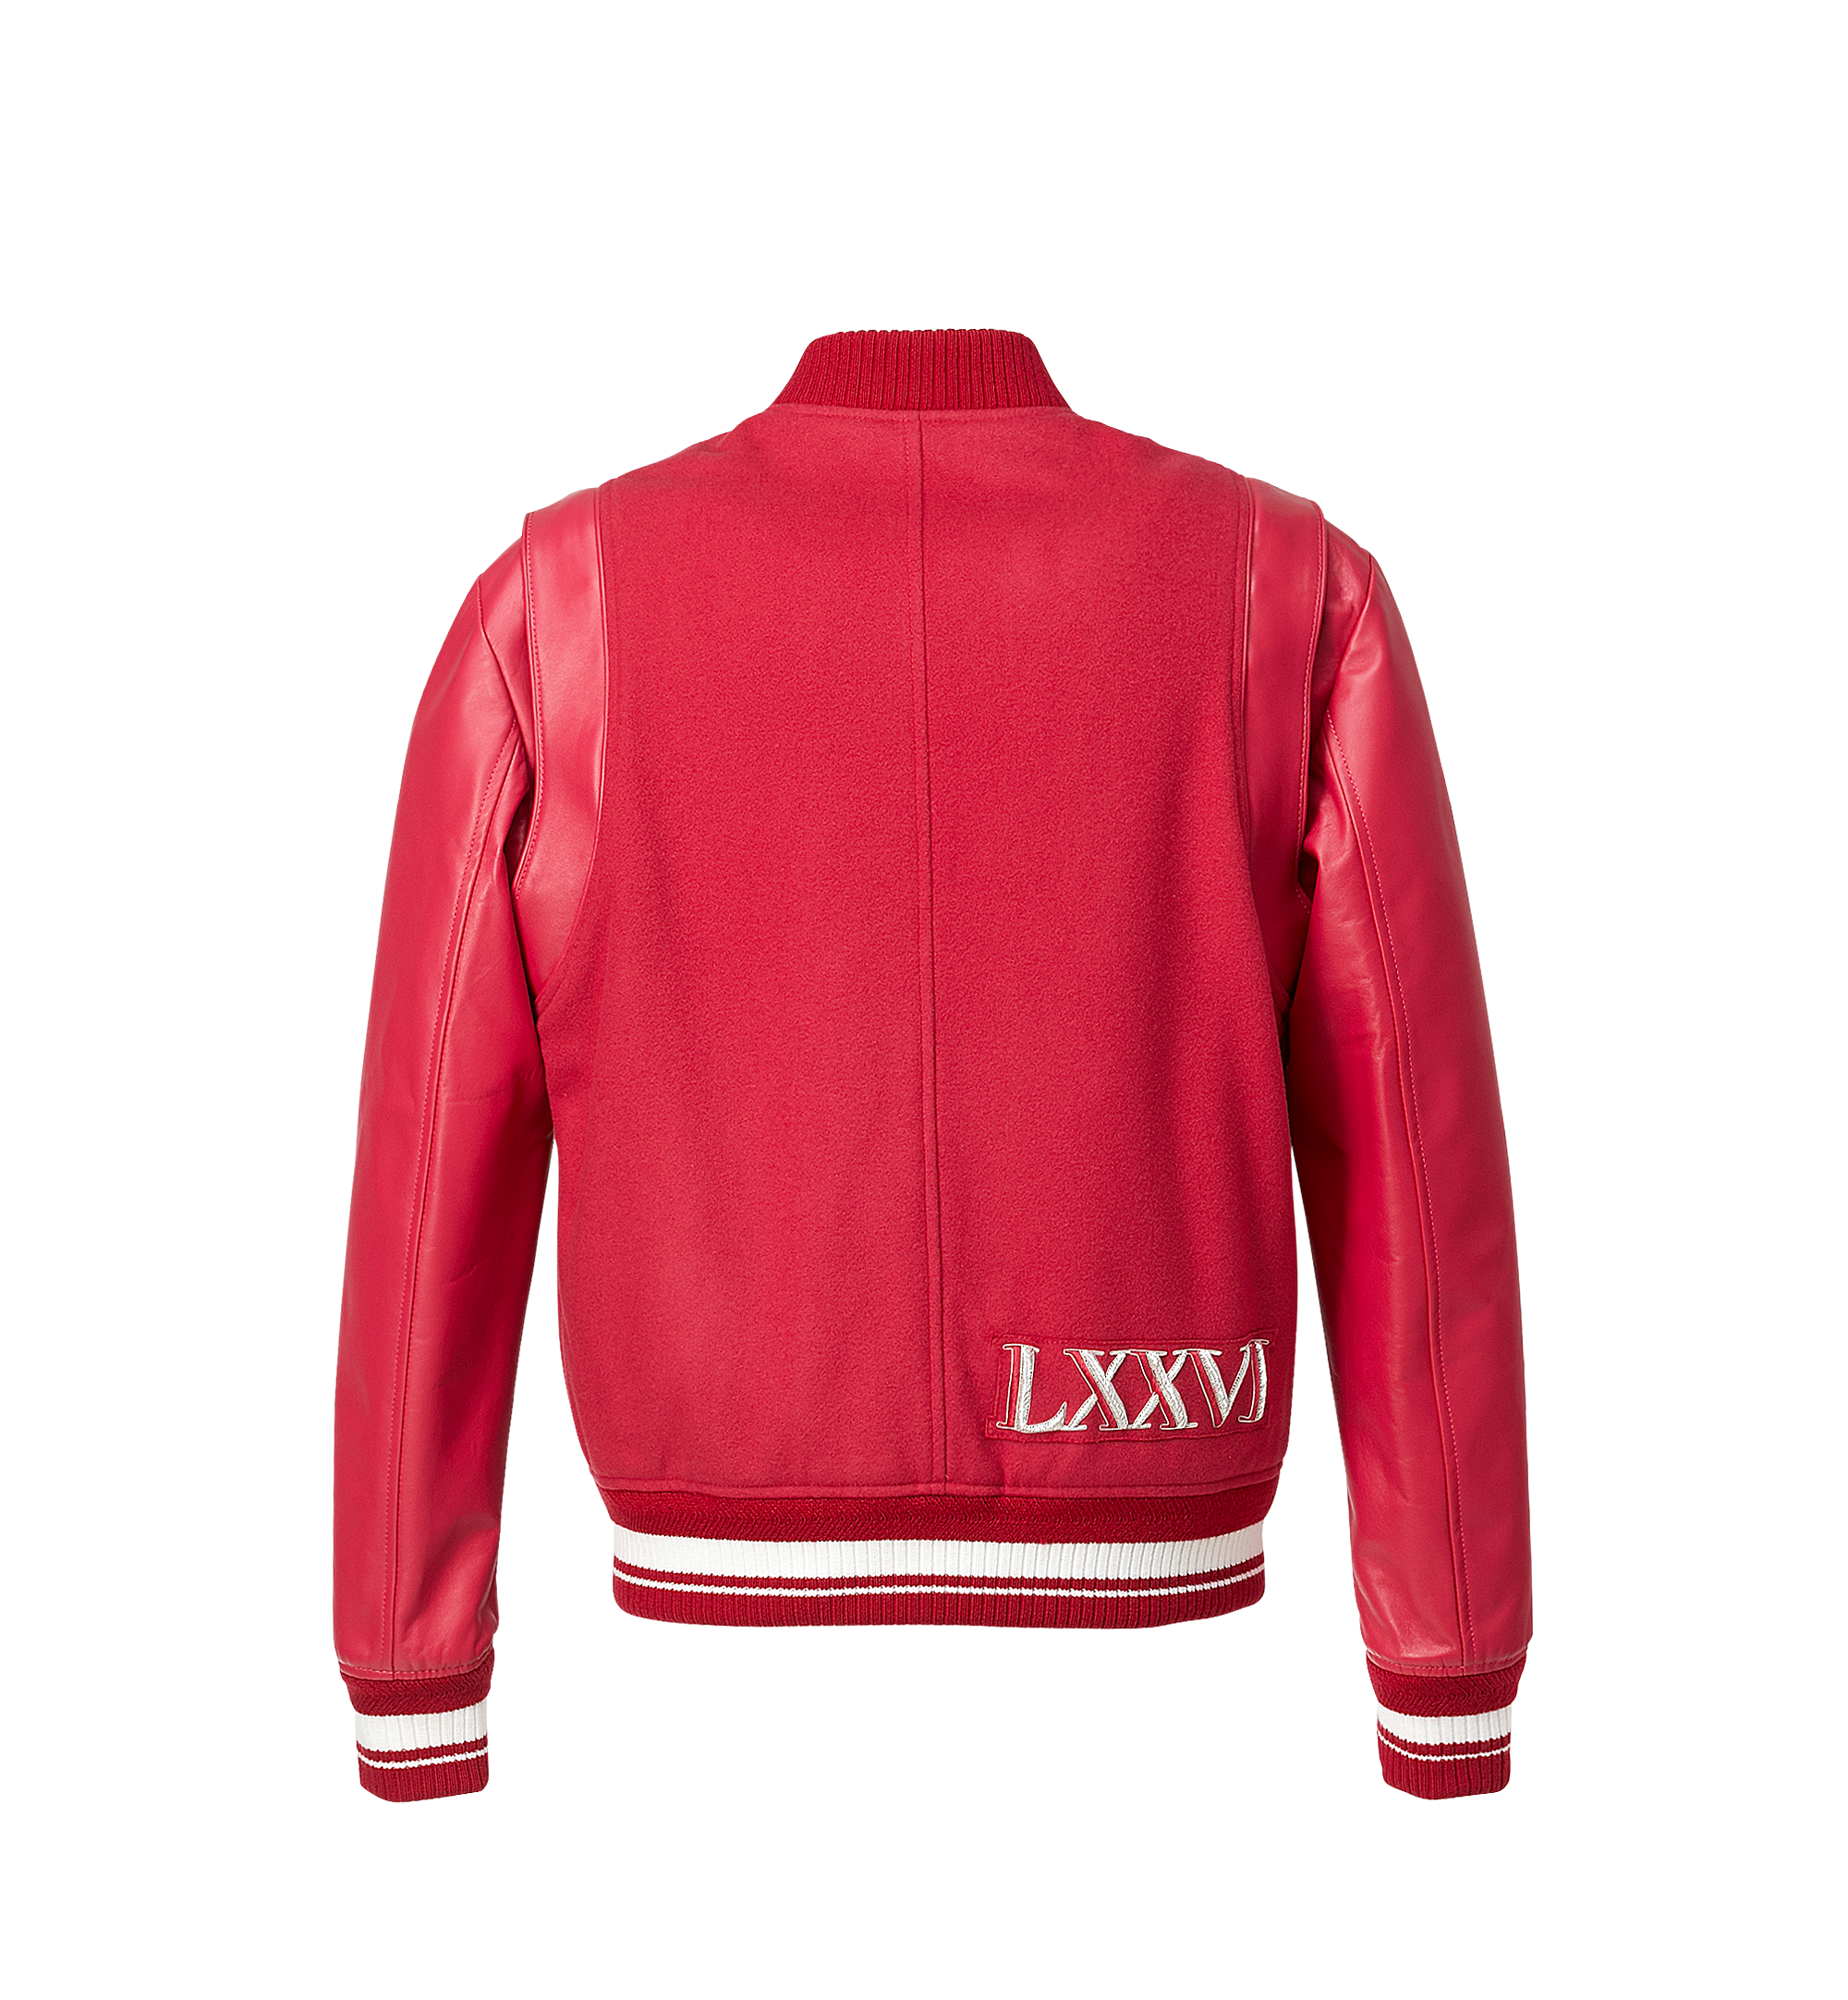 Red Denim Jacket (Trendencies)  Red denim jacket, Red jacket